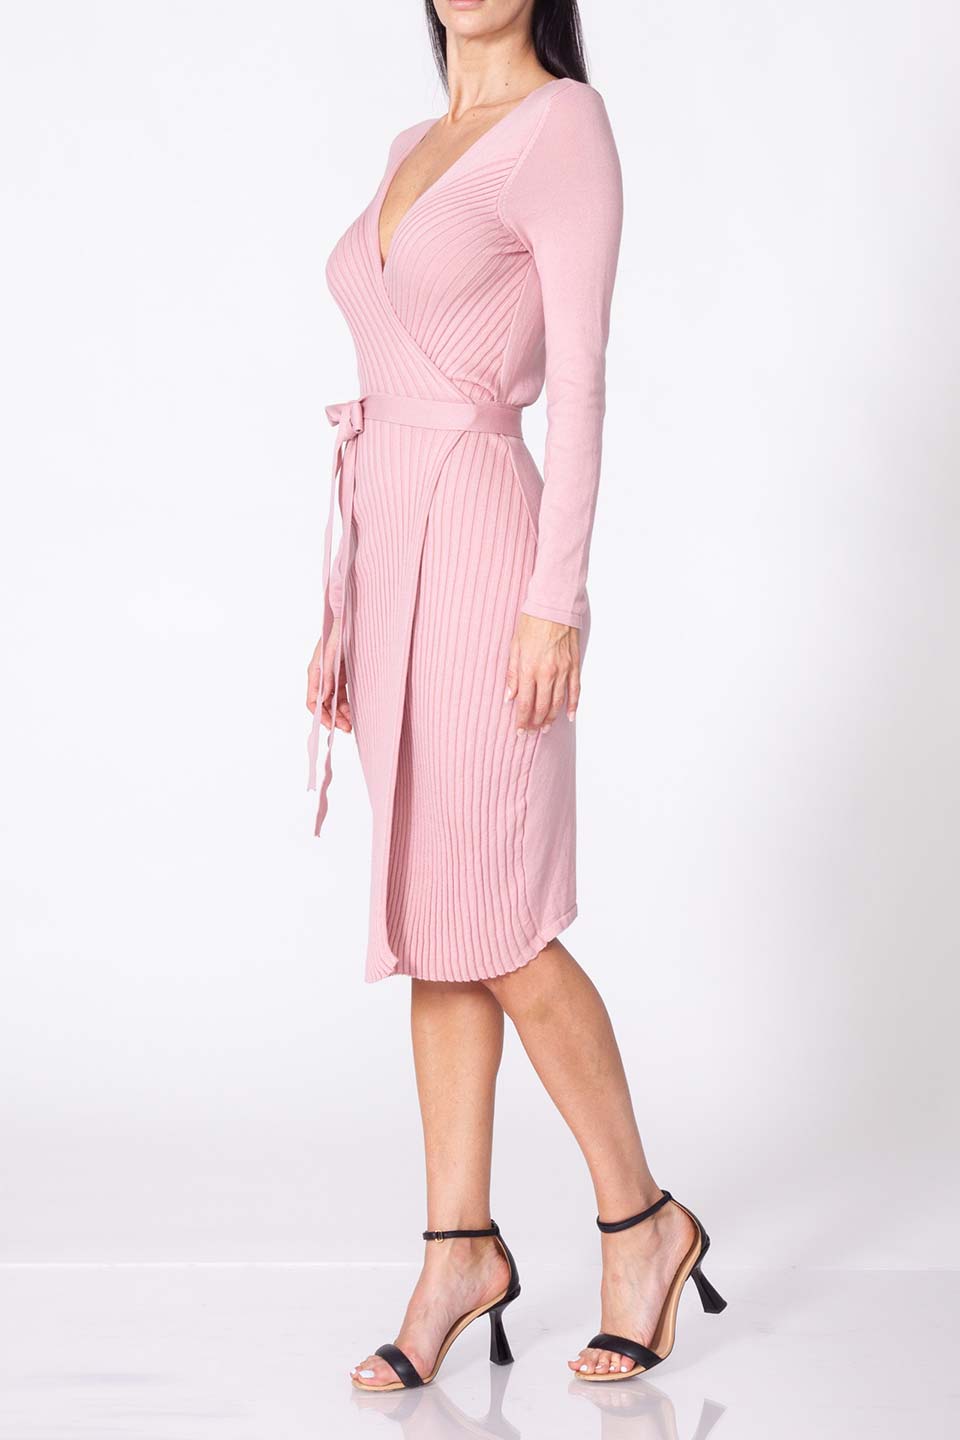 Violante Nessi fashion designer midi dress in cashmere fabric and pink color